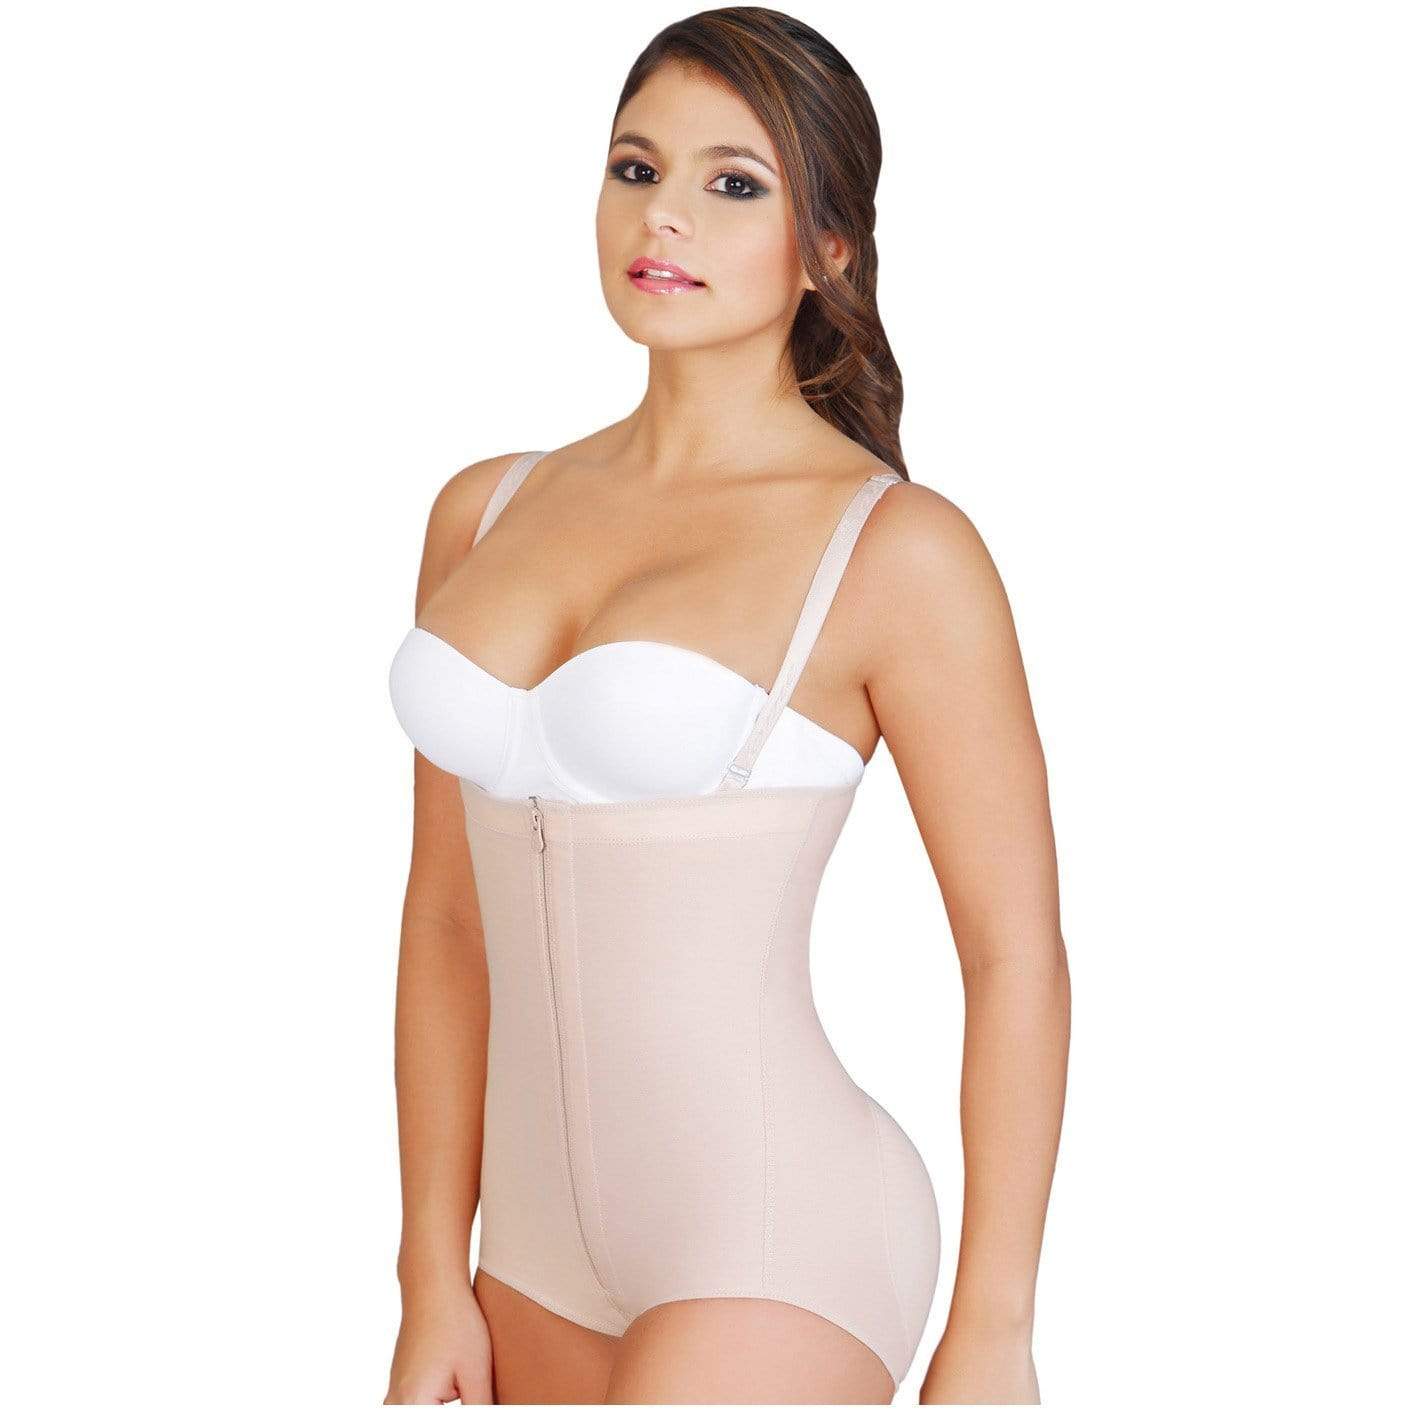 https://www.myfajascolombianas.com/cdn/shop/products/fajas-salome-0414-strapless-butt-lifter-shapewear-for-women-536694.jpg?v=1654384755